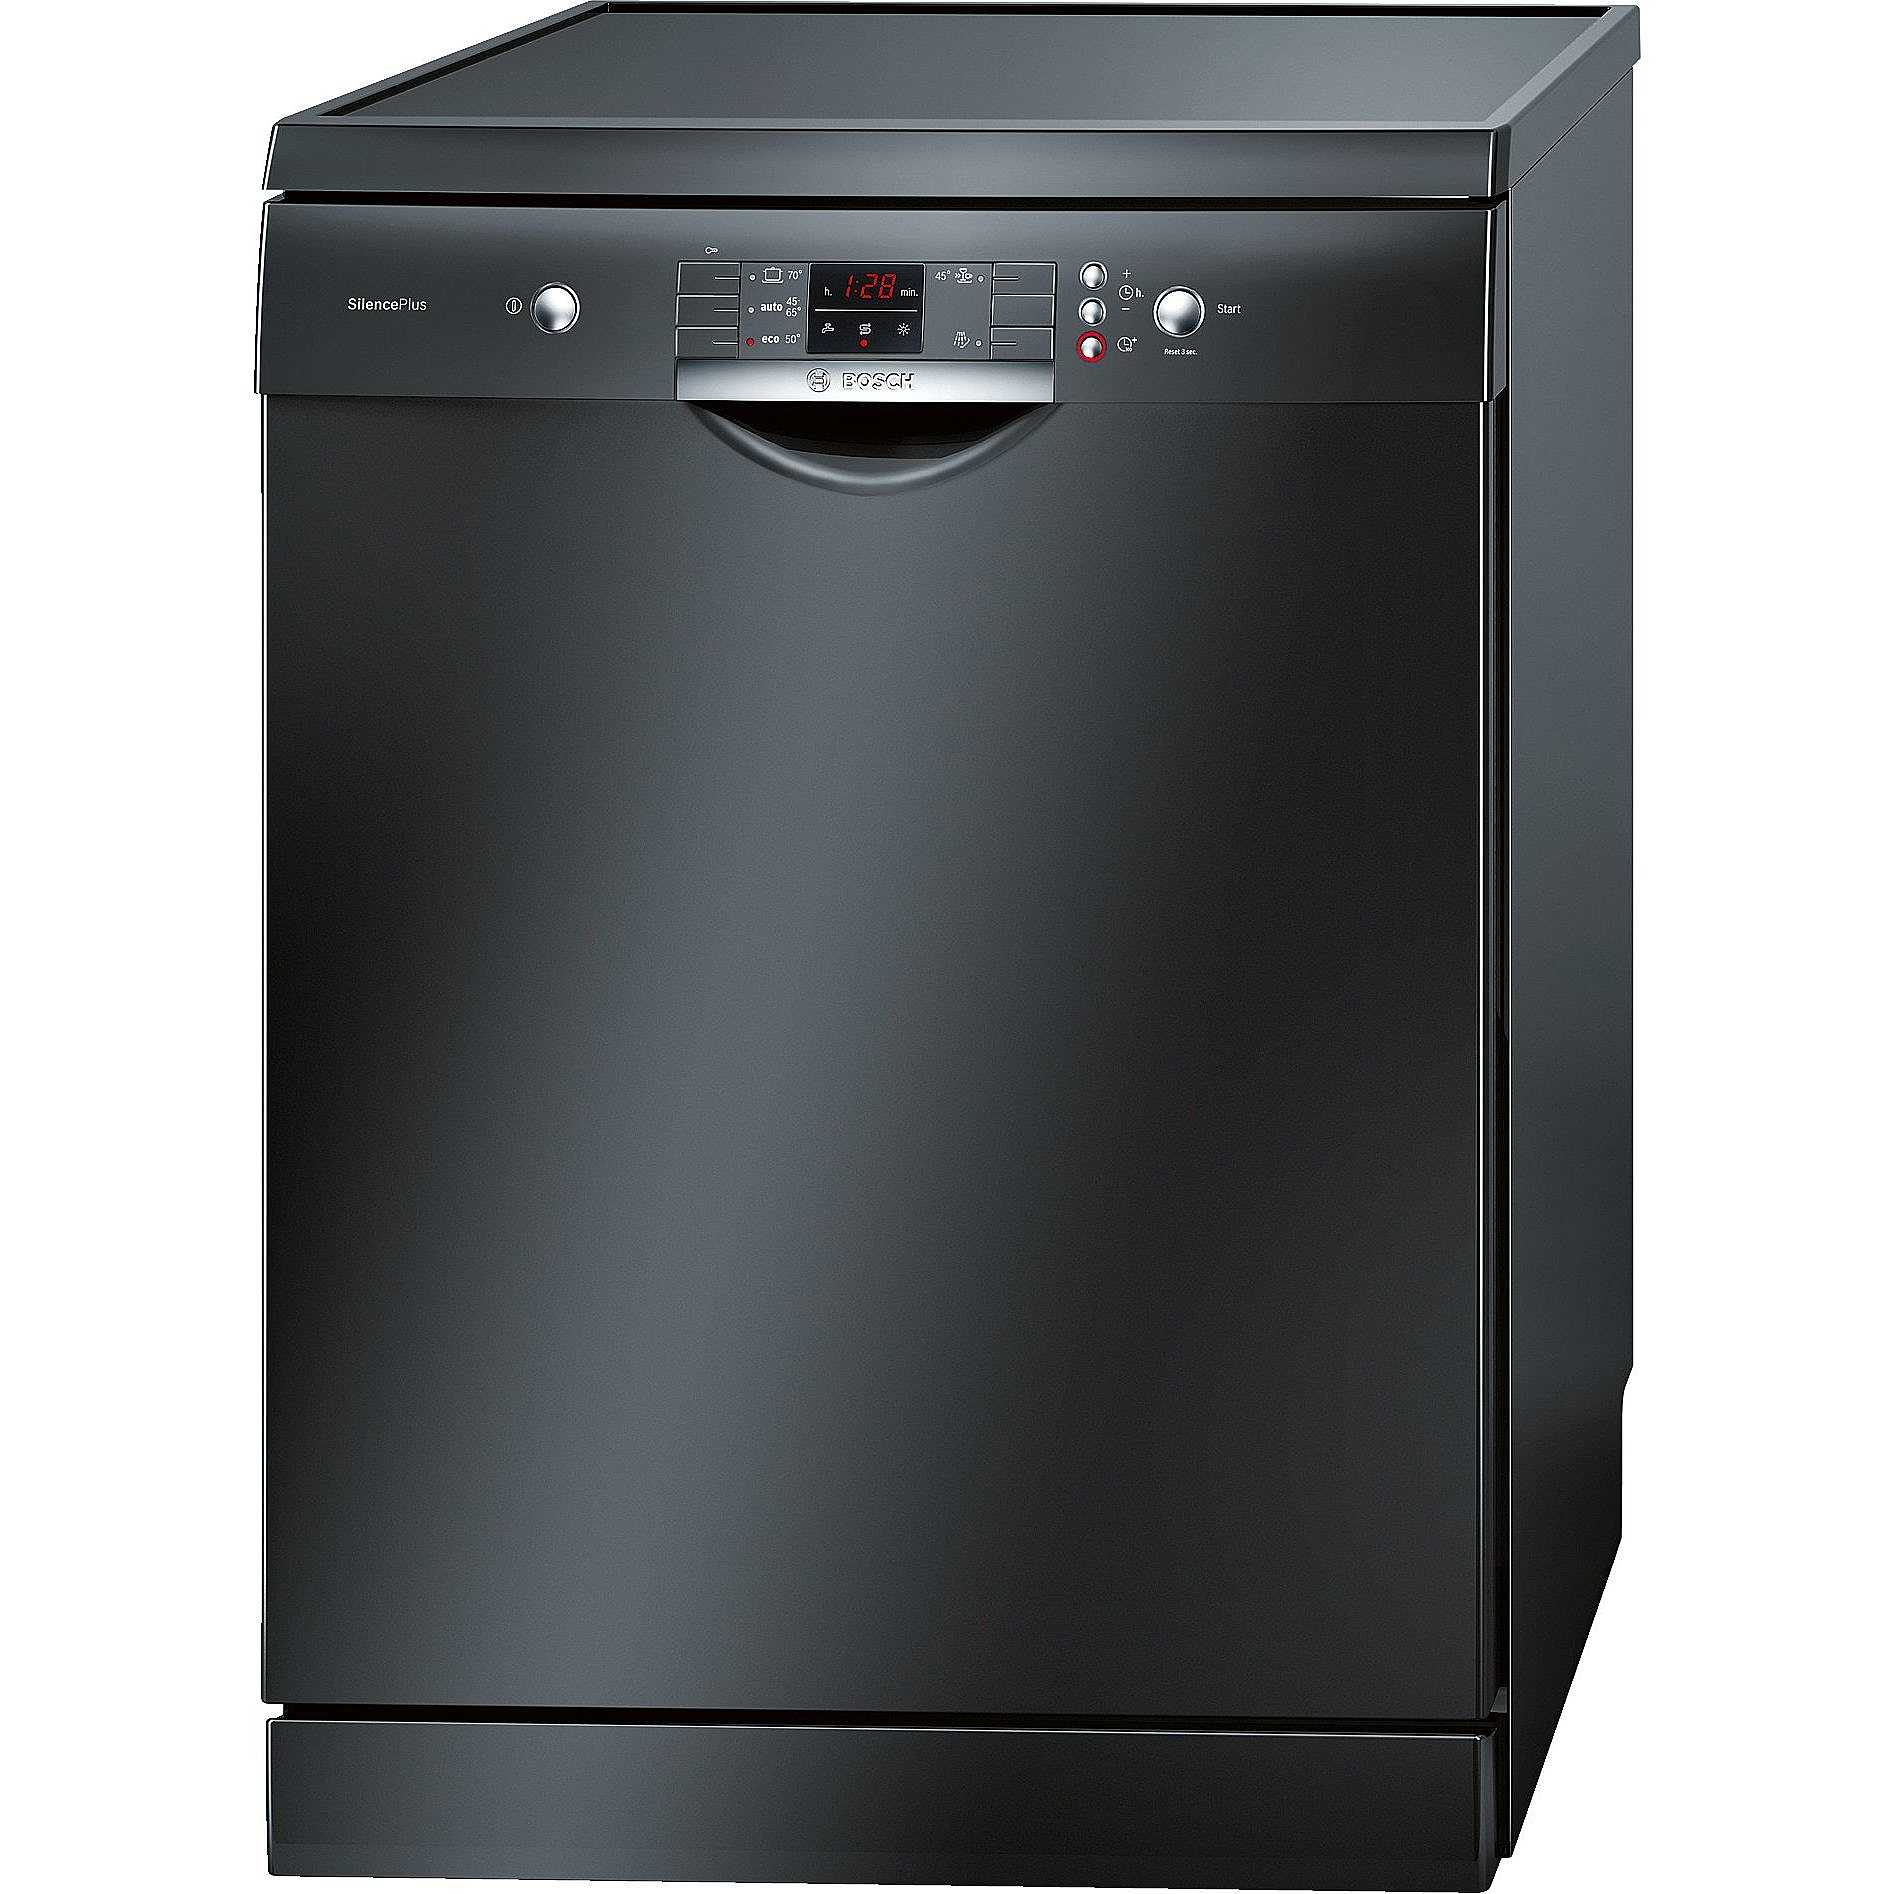 Встраиваемая посудомоечная машина черная. Посудомоечная машина Bosch 60 Silence Plus. Bosch sms43d08me. Bosch посудомоечная машина черная отдельностоящая 60 см. Бош посудомоечная машина 60 см черная.